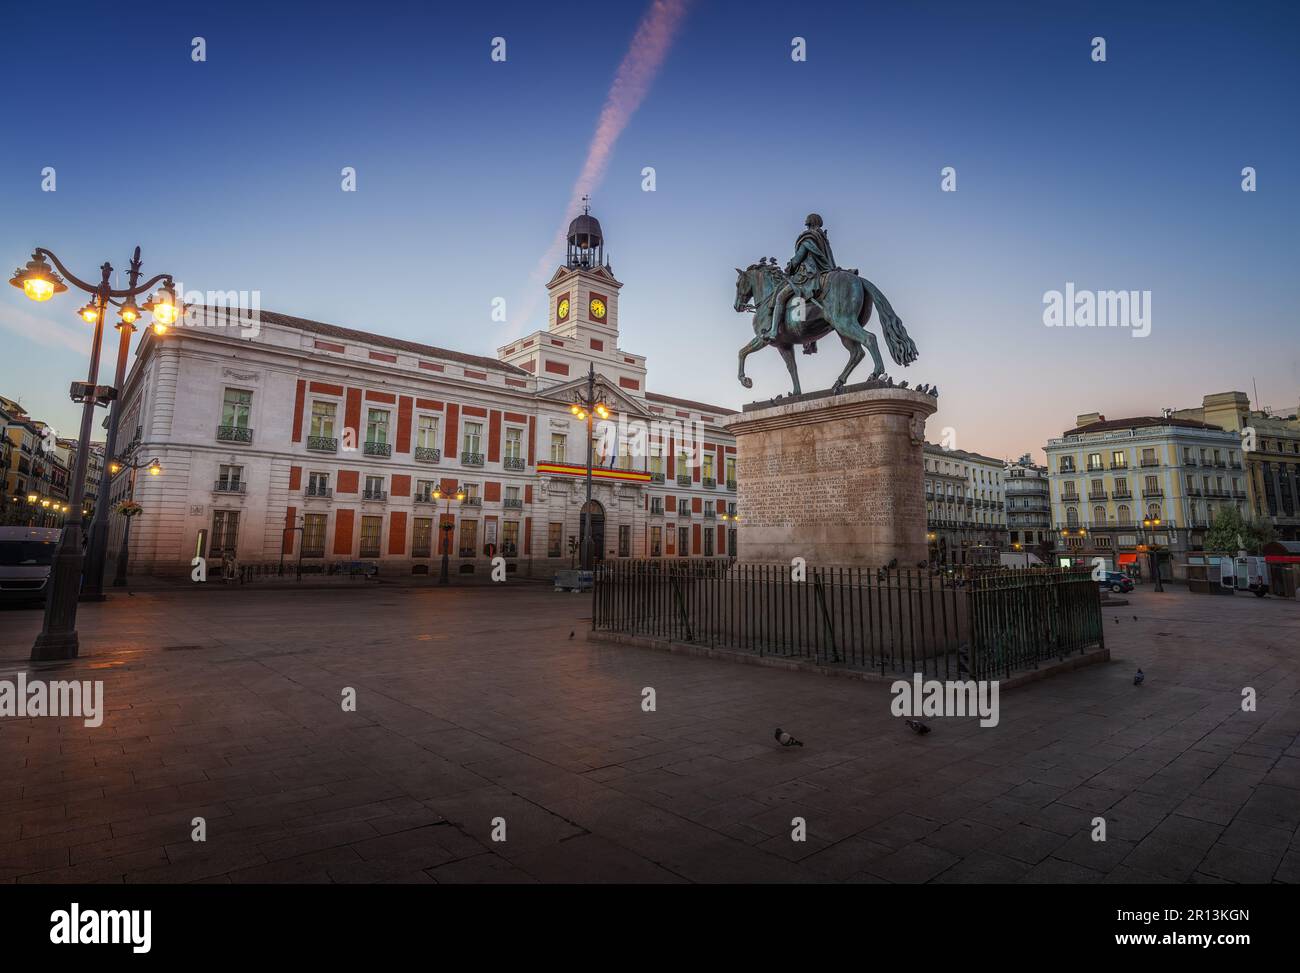 Piazza Puerta del Sol all'alba con il Monumento a Re Carlo III (Carlos III) e la Casa reale dell'Ufficio postale - Madrid, Spagna Foto Stock